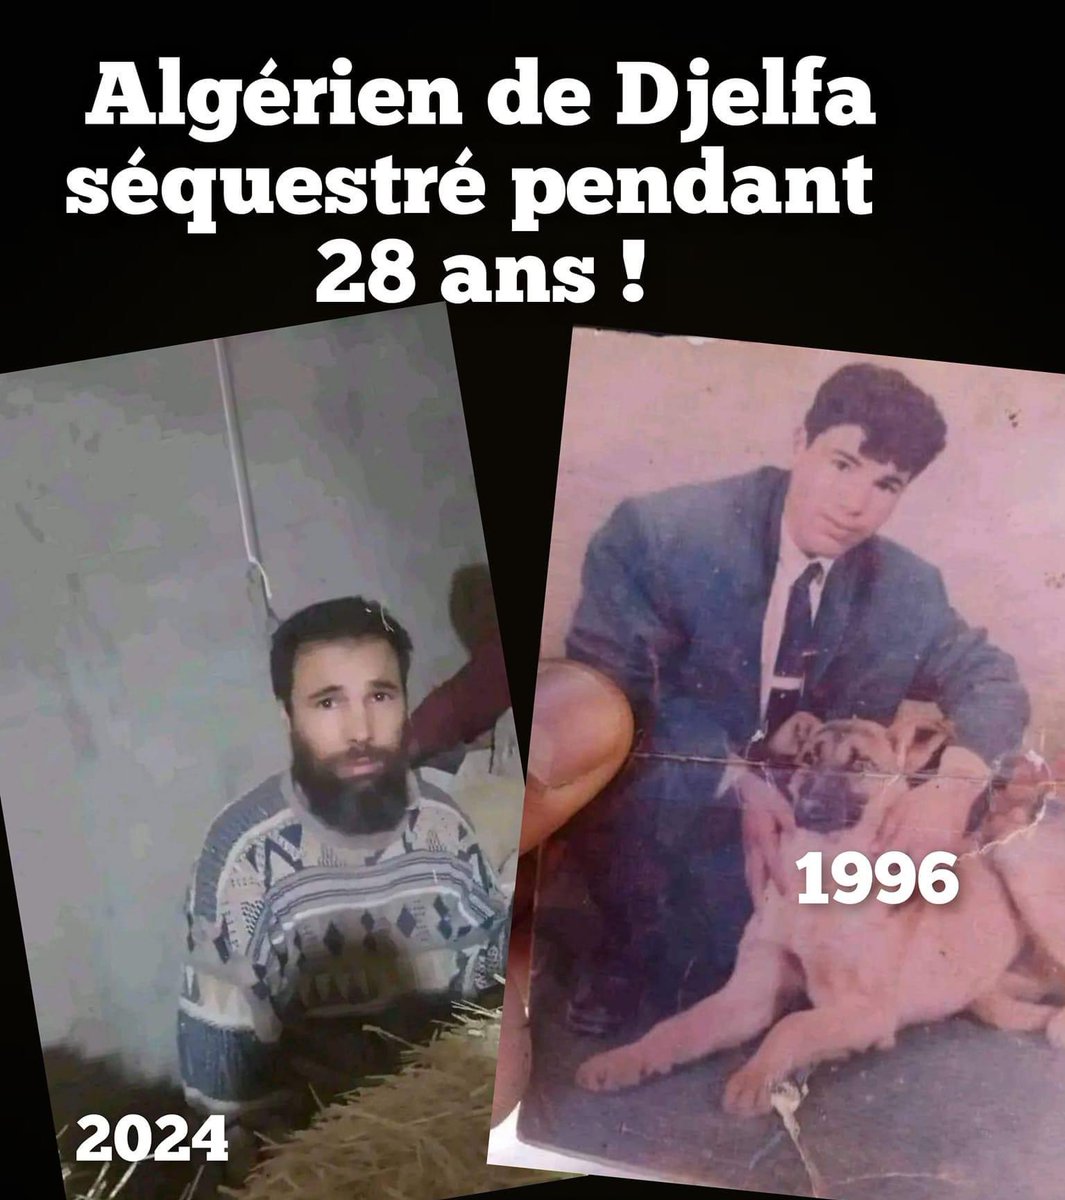 ⭕️ 🇩🇿 Histoire insolite en Algérie, plus exactement à Djelfa. Cet homme est porté disparu depuis 28 ans à été retrouvé.
En 1996, il avait 17 ans, maintenant il a 45 ans.
L'histoire n'est pas encore claire. Elle a eu lieu à Djelfa. Cet homme aurait été kidnappé et séquestré